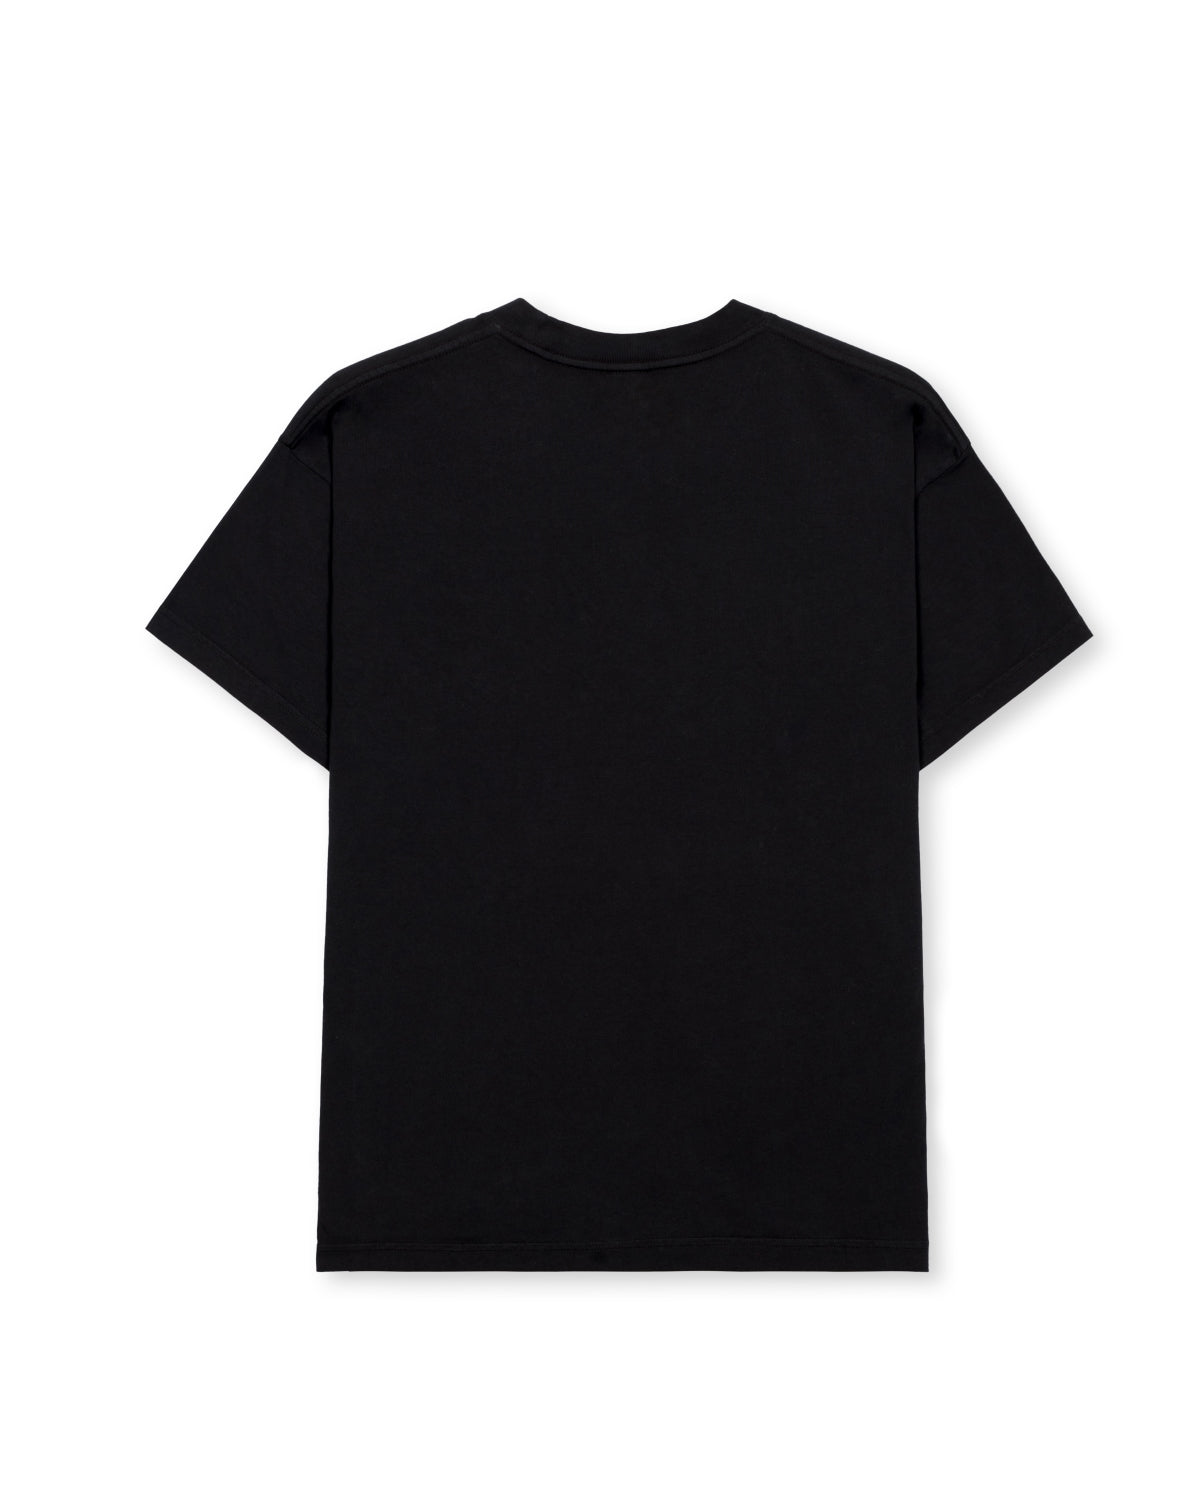 Kogan's Revenge T-Shirt - Black 2